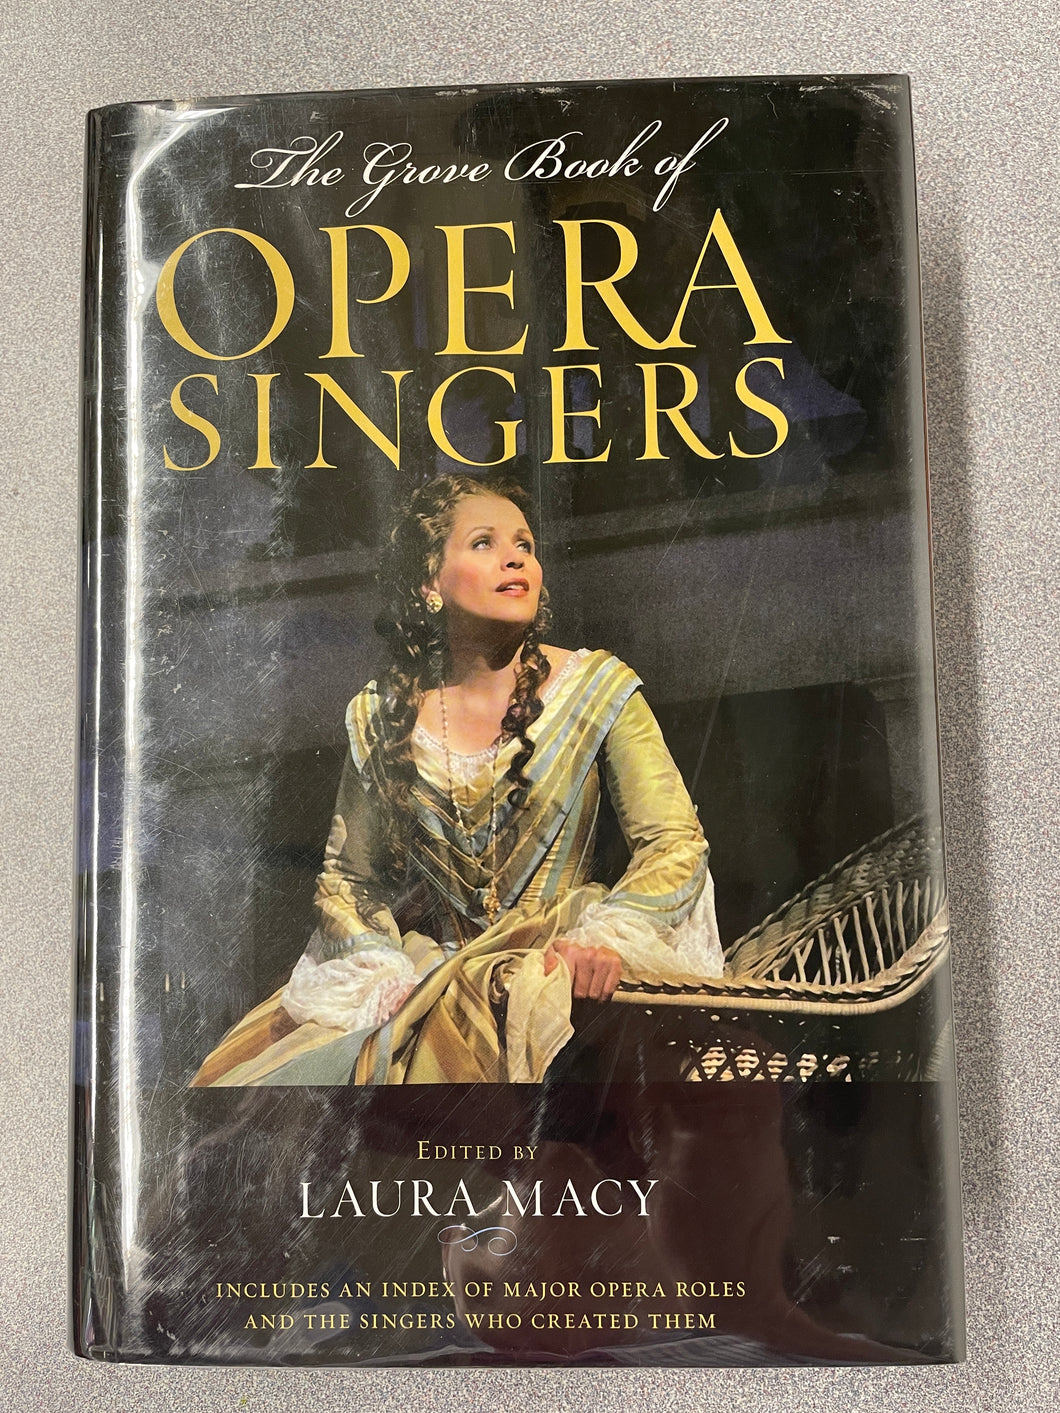 The Grove Book of Opera Singers, Macy, Laura, ed.  [2008] TS 3/23